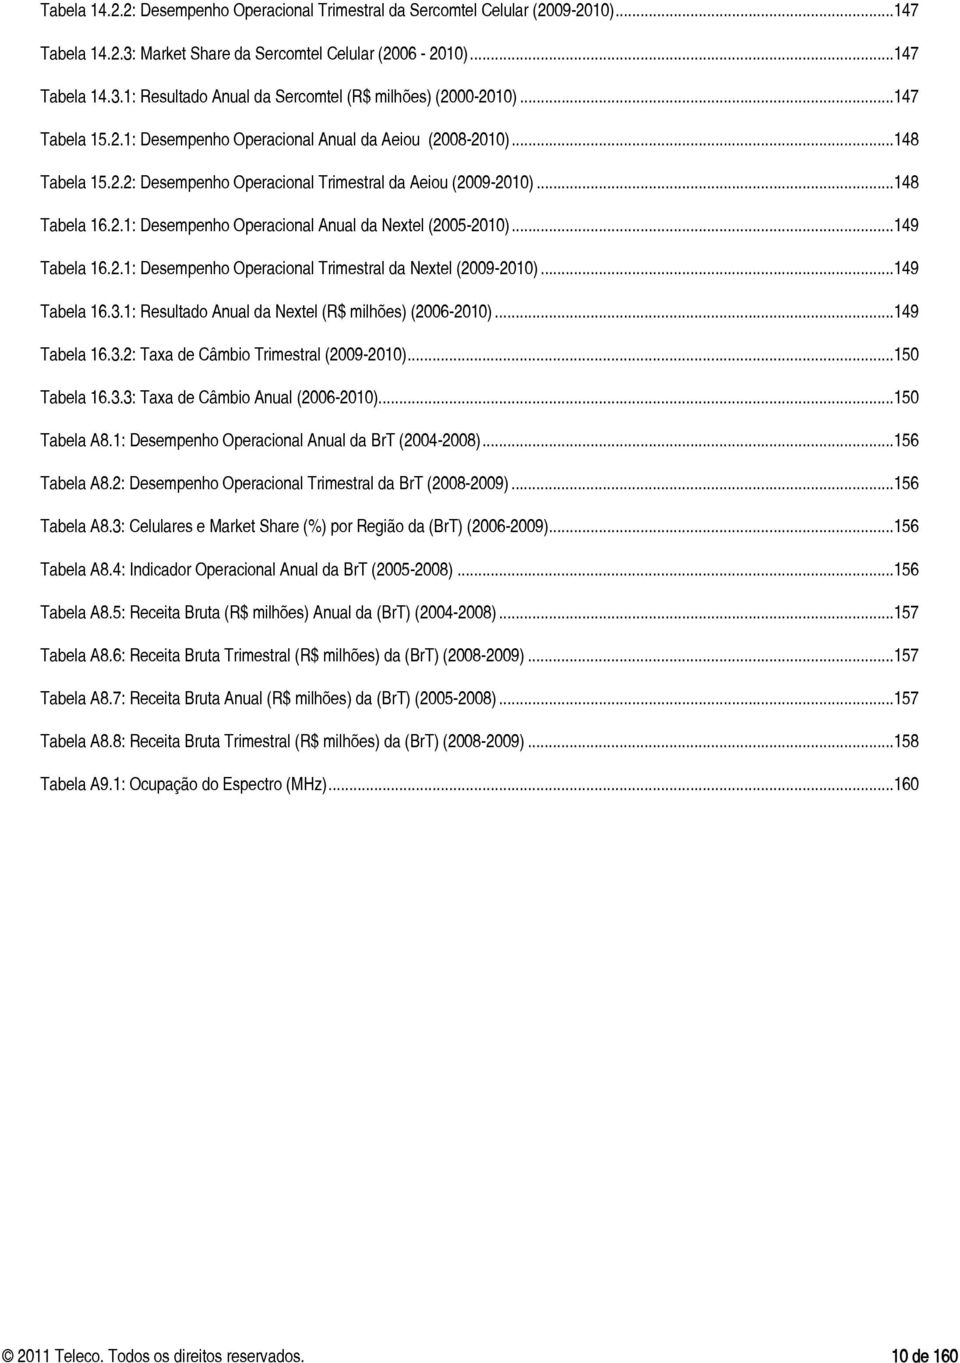 .. 149 Tabela 16.2.1: Desempenho Operacional Trimestral da Nextel (2009-2010)... 149 Tabela 16.3.1: Resultado Anual da Nextel (R$ milhões) (2006-2010)... 149 Tabela 16.3.2: Taxa de Câmbio Trimestral (2009-2010).